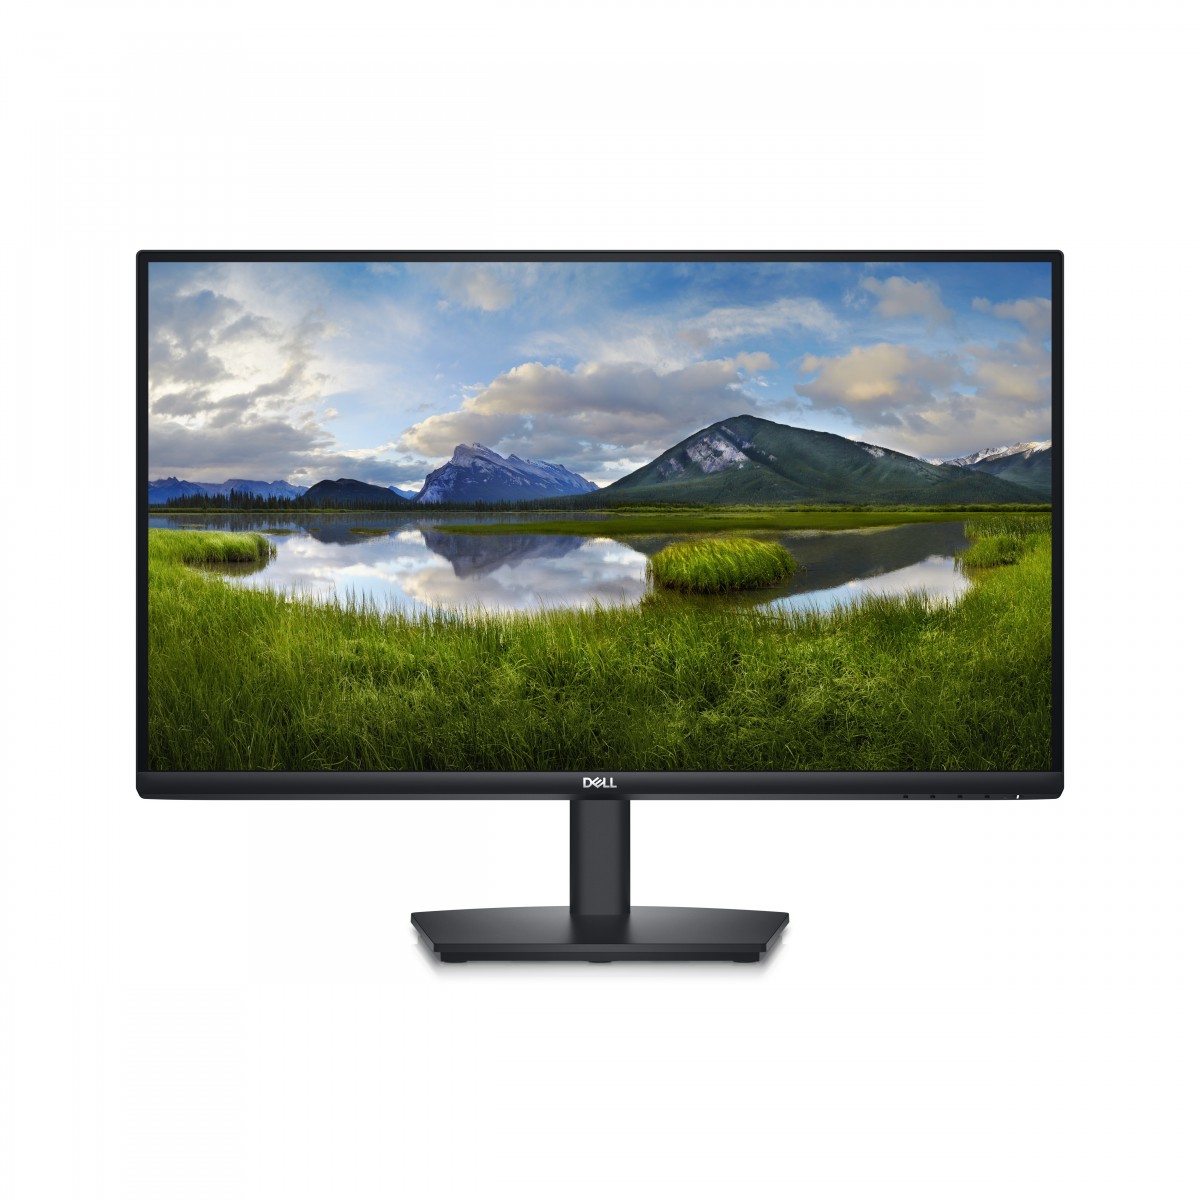 Dell 27 Monitor - E2724HS 60.47cm 23.8 - Flat Screen - 60.47 cm